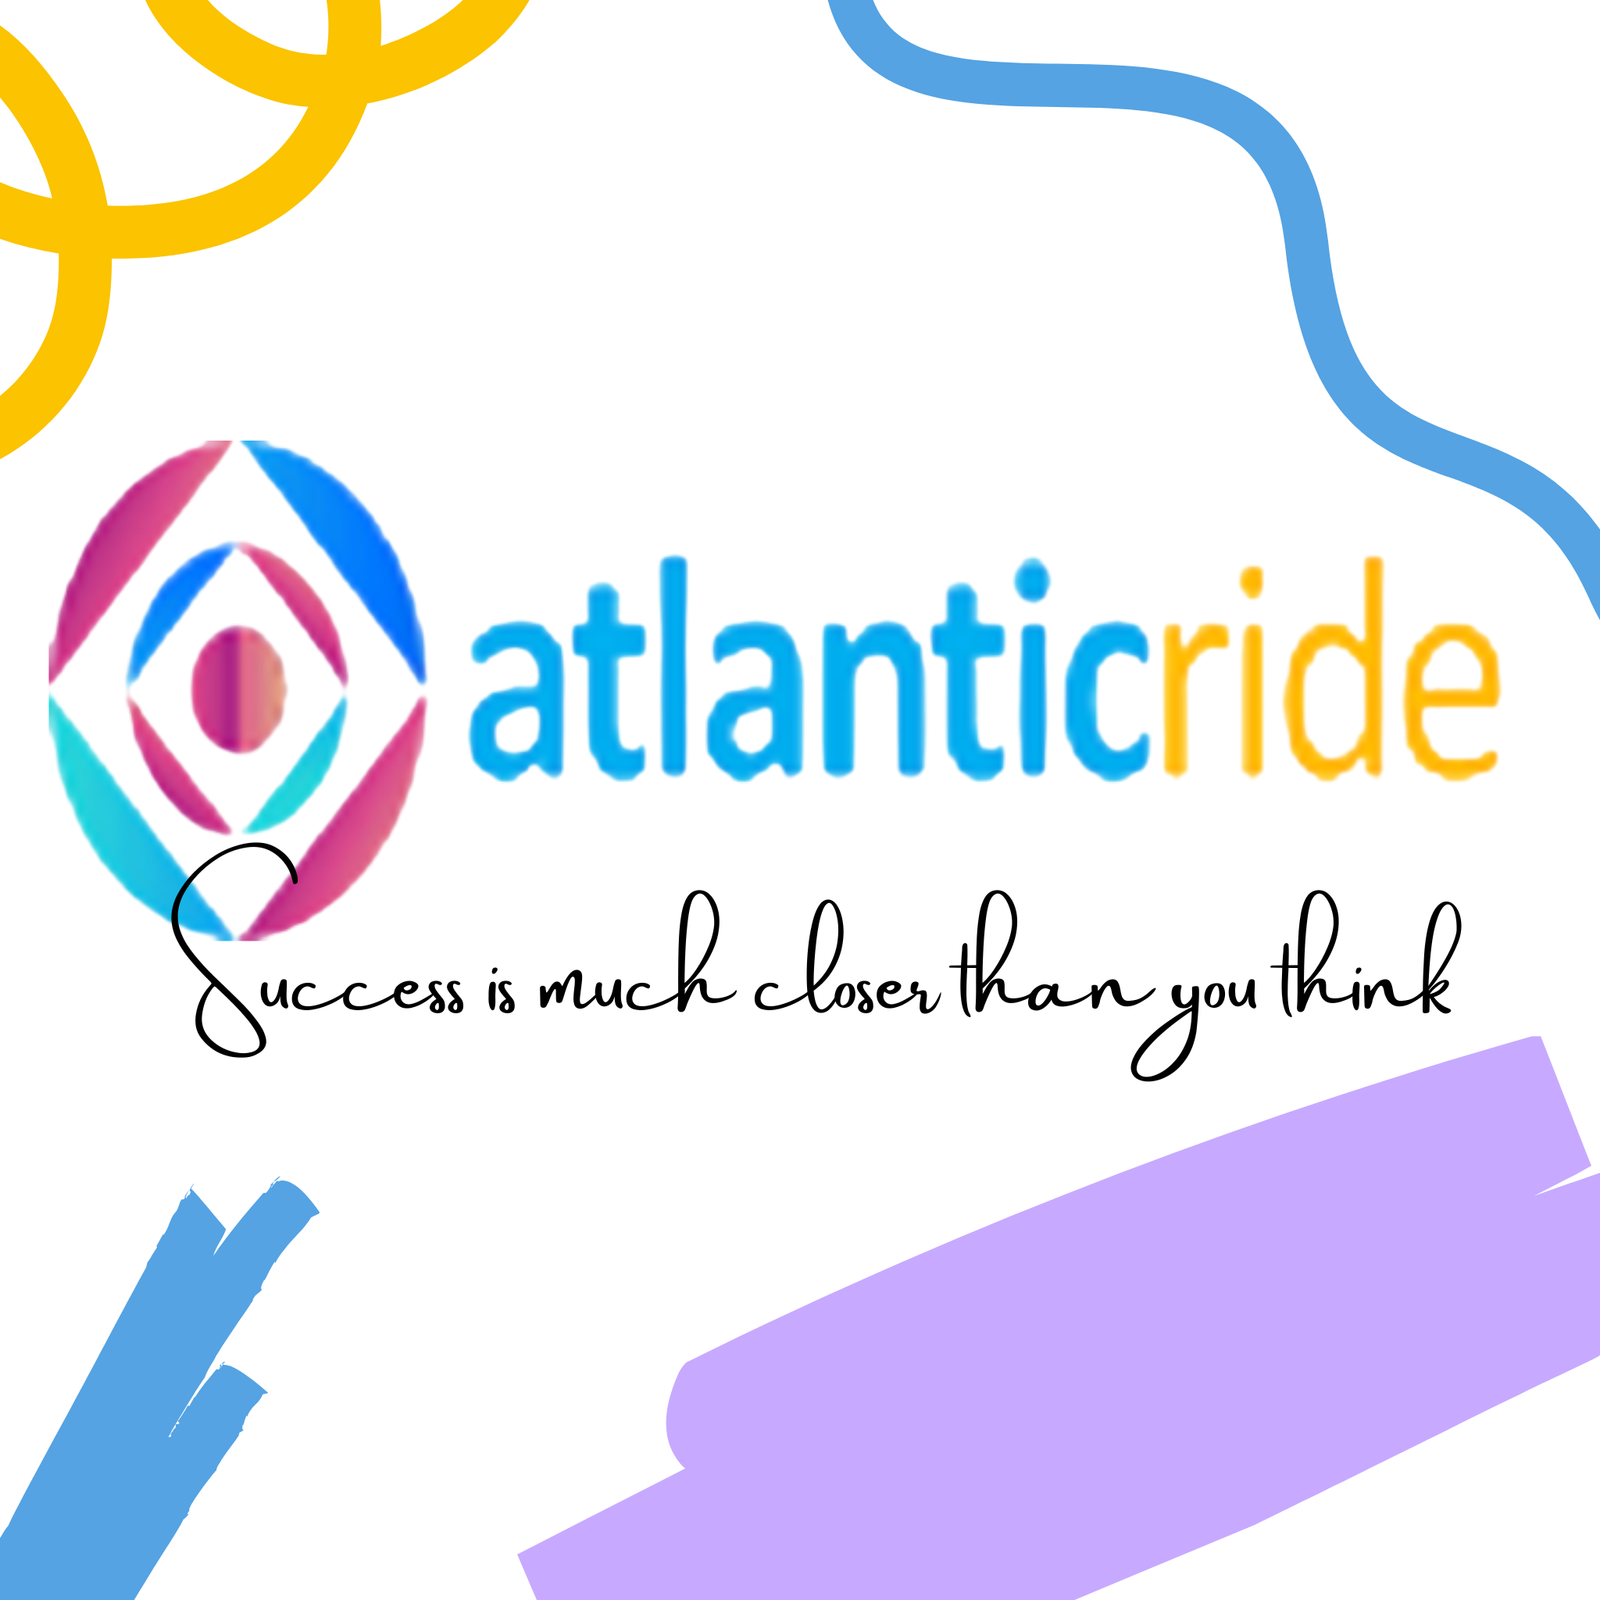 AtlanticRide